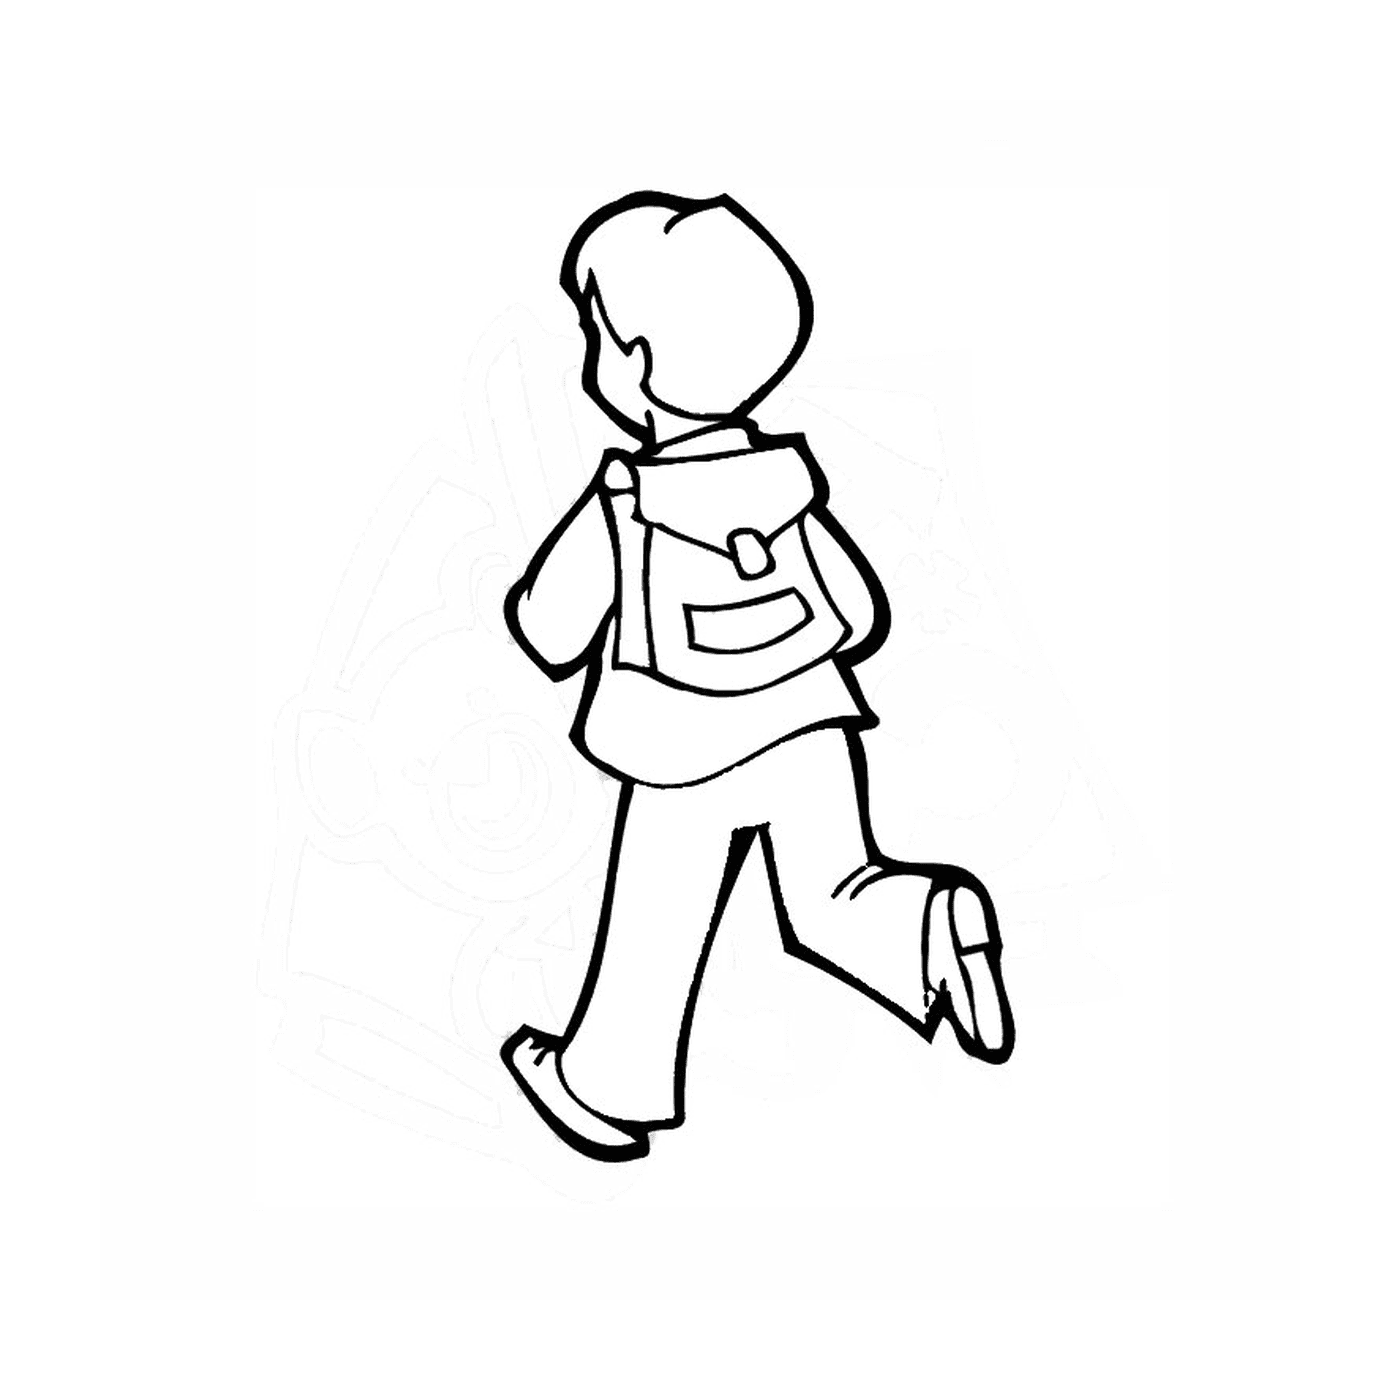   Je vais à l'école : un garçon en train de marcher 